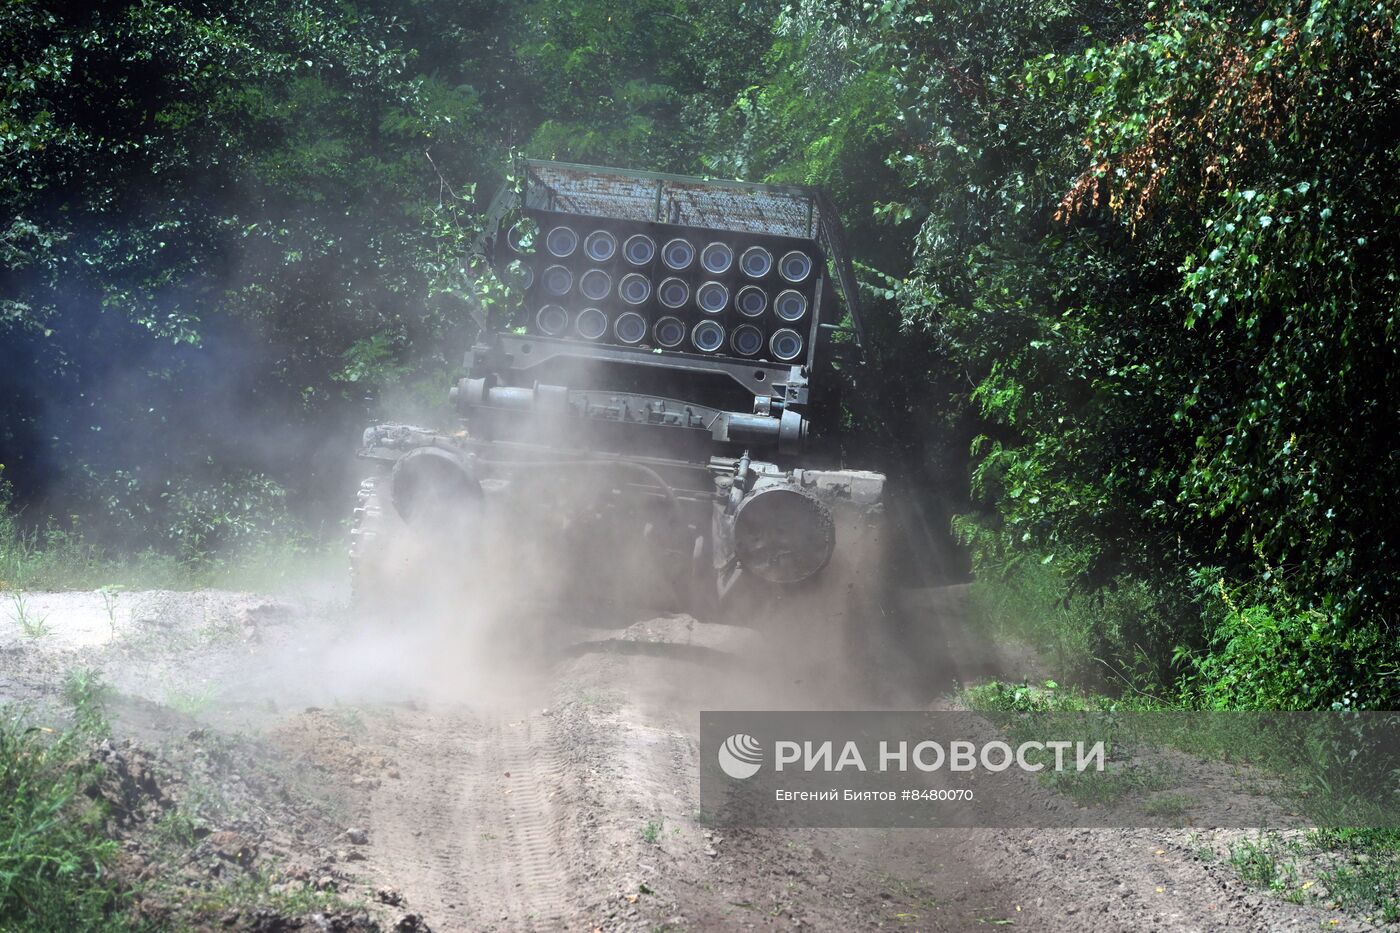 Работа экипажа тяжелой огнеметной системы ТОС-1А  Центрального военного округа на Краснолиманском направлении